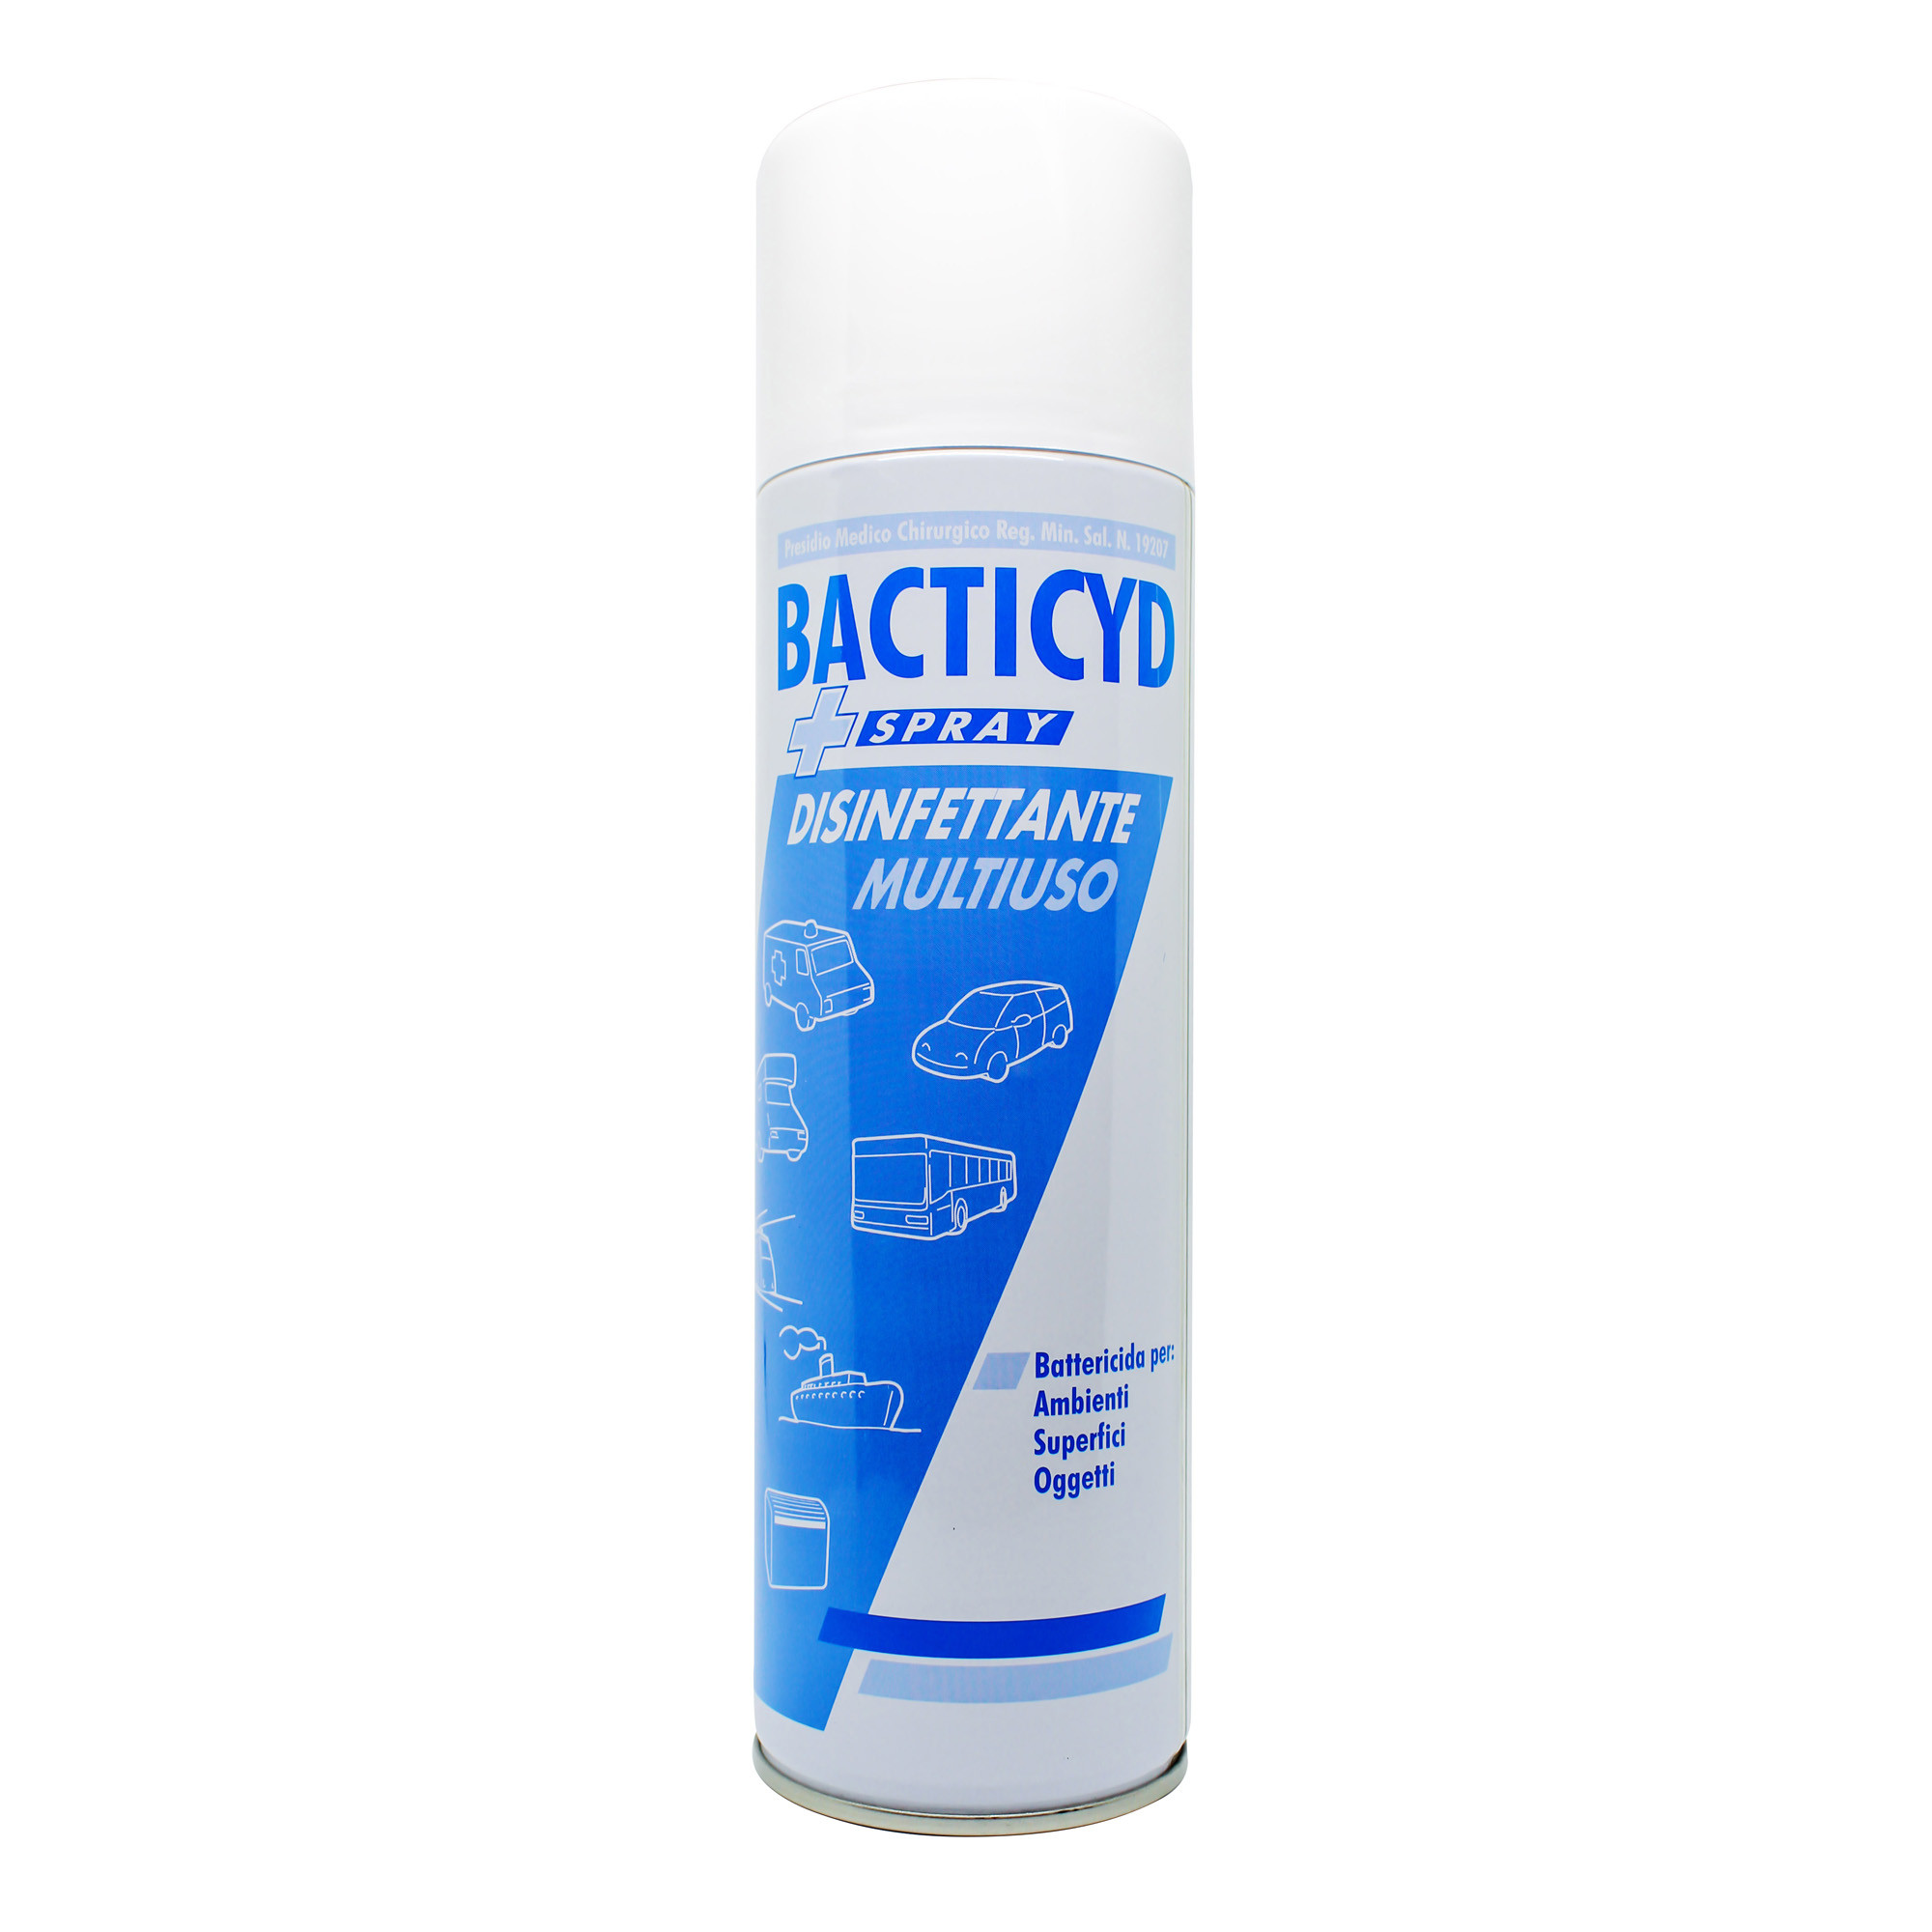 Mehrzweck-Desinfektionsmittel für professionelle Umgebungen mit antibakterieller und desodorierender Wirkung Bacticyd Spray 500 ml